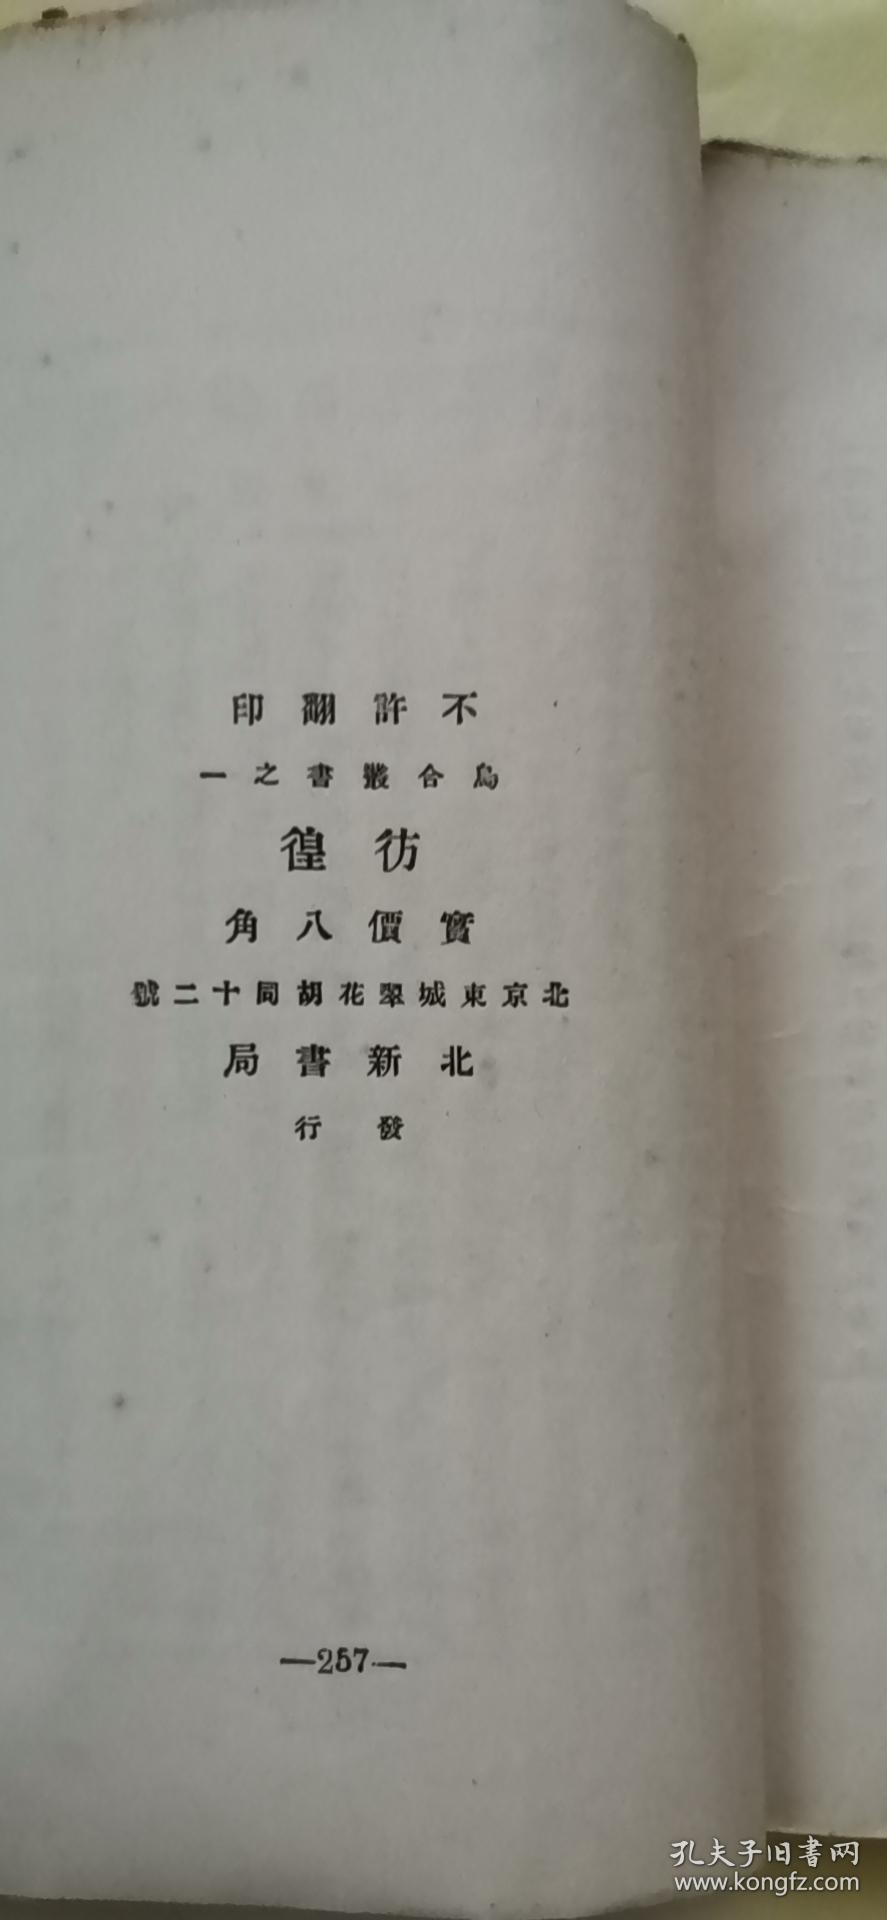 毛边本 彷徨  鲁迅 1926年初版 缺封面封底